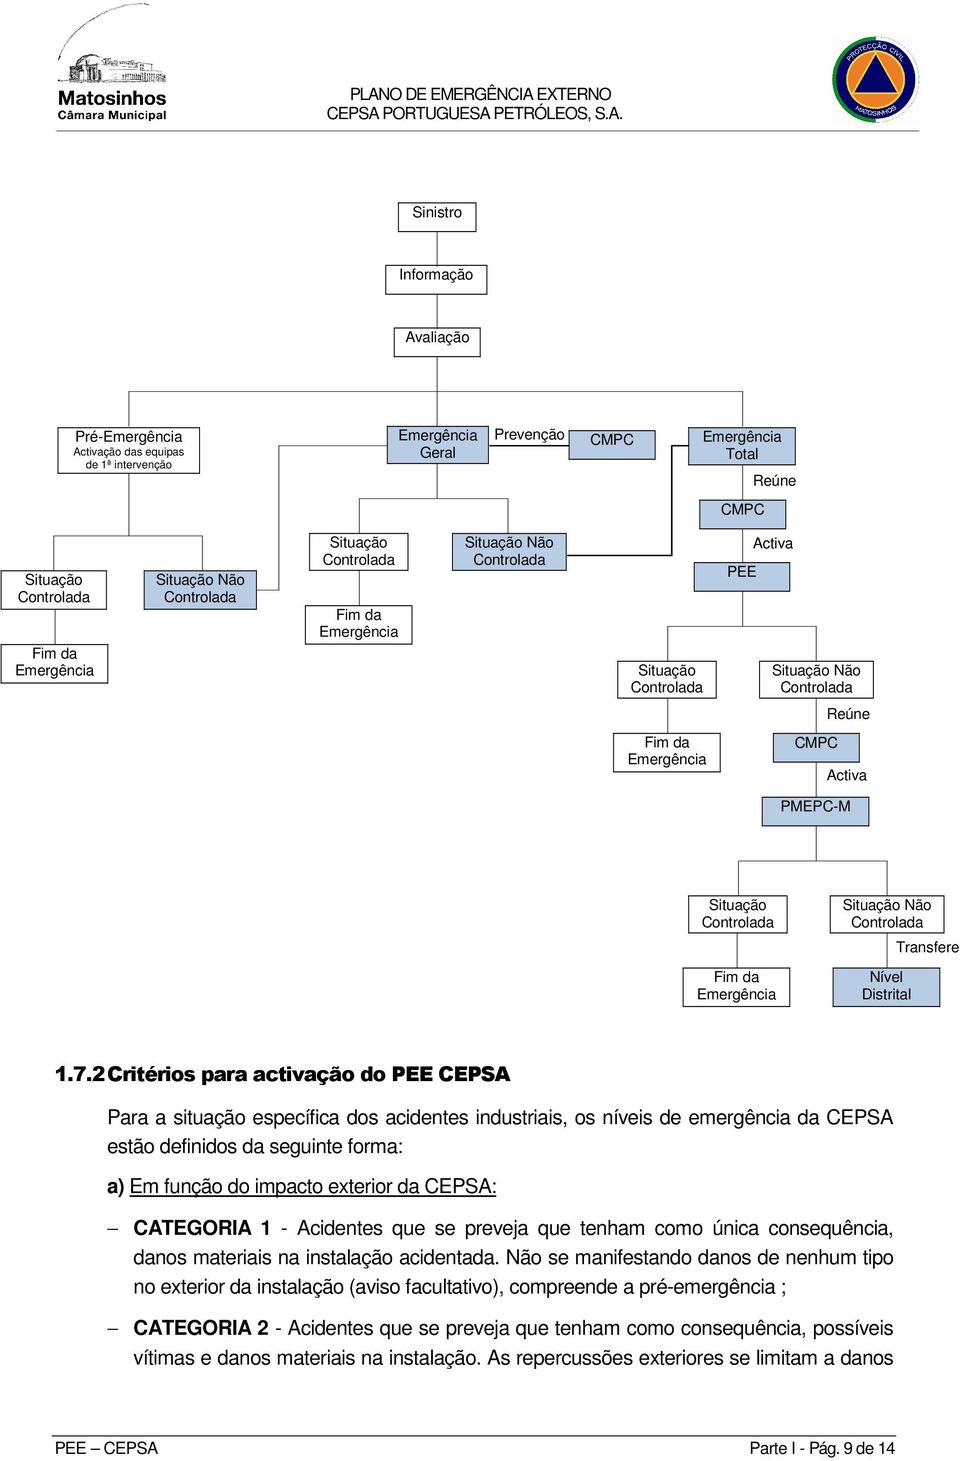 2 Critérios para activação do PEE CEPSA Para a situação específica dos acidentes industriais, os níveis de emergência da CEPSA estão definidos da seguinte forma: a) Em função do impacto exterior da